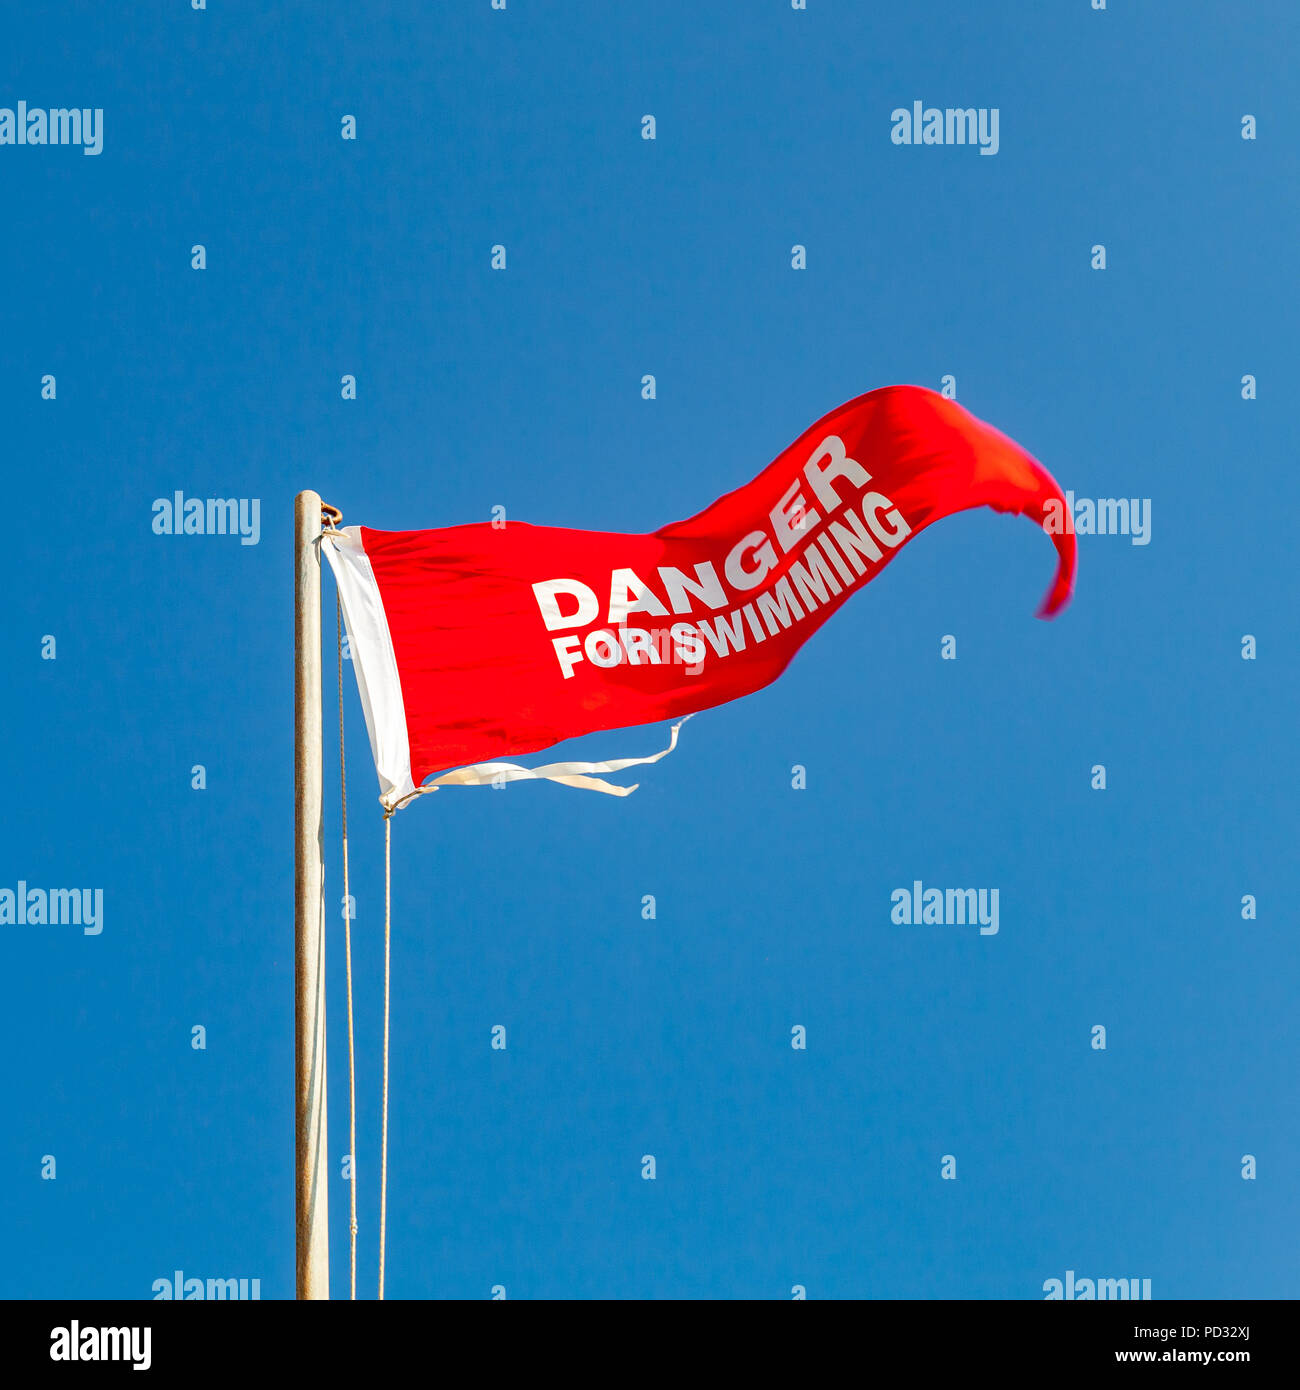 Danger pour la baignade. Drapeau d'avertissement rouge sur une plage en agitant au-dessus de ciel bleu. Close-up square photo Banque D'Images